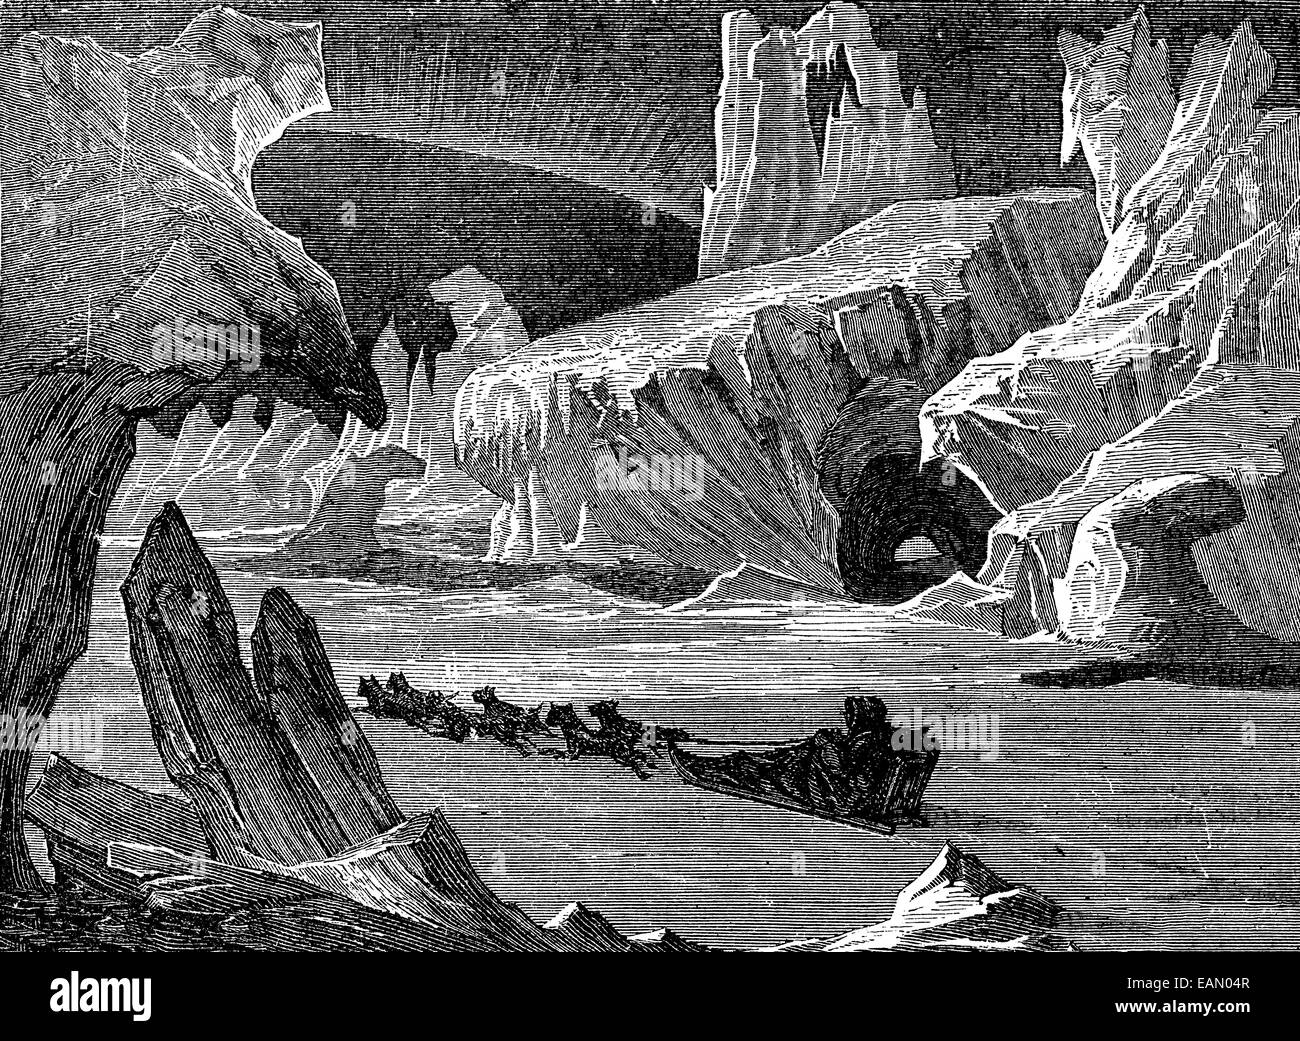 In ice, arctic landscape, vintage engraved illustration. Journal des Voyages, Travel Journal, (1879-80). Stock Photo